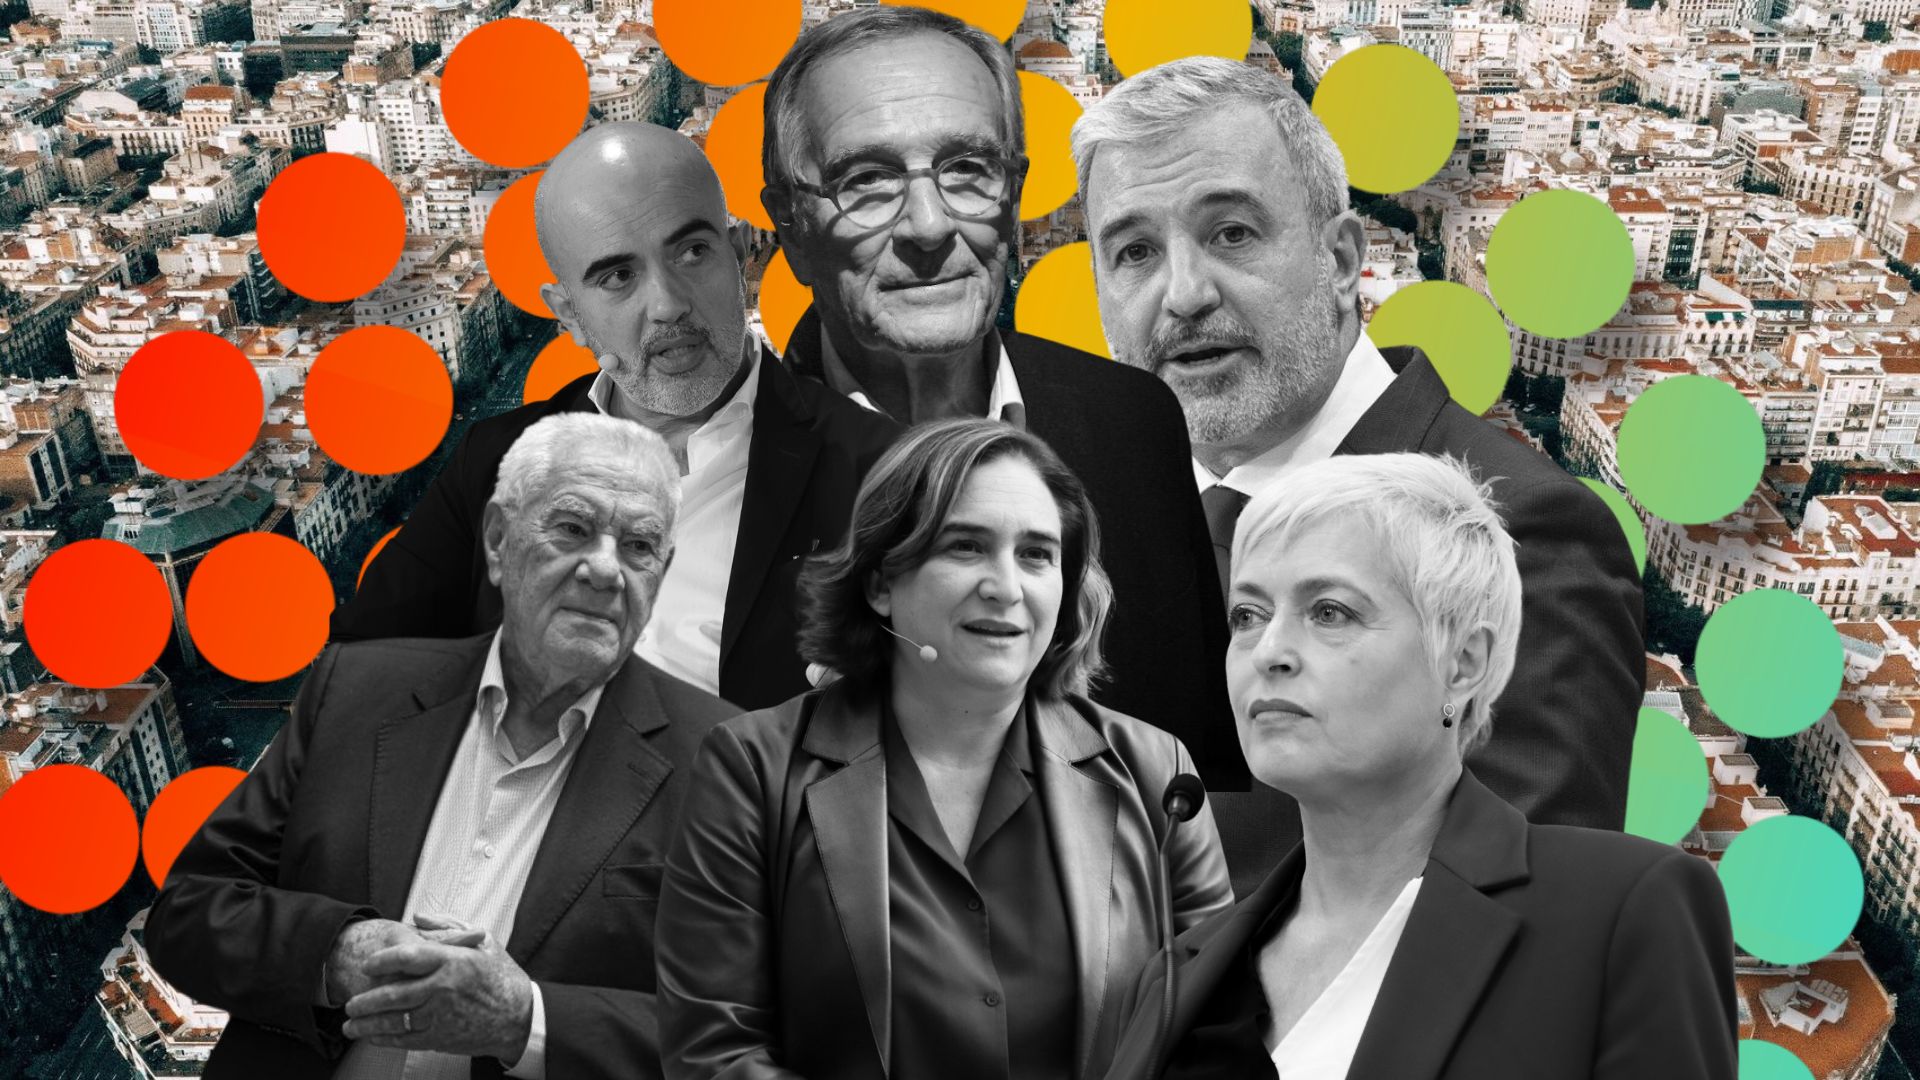 Quin candidat creus que ha guanyat el debat electoral de Barcelona de TV3?